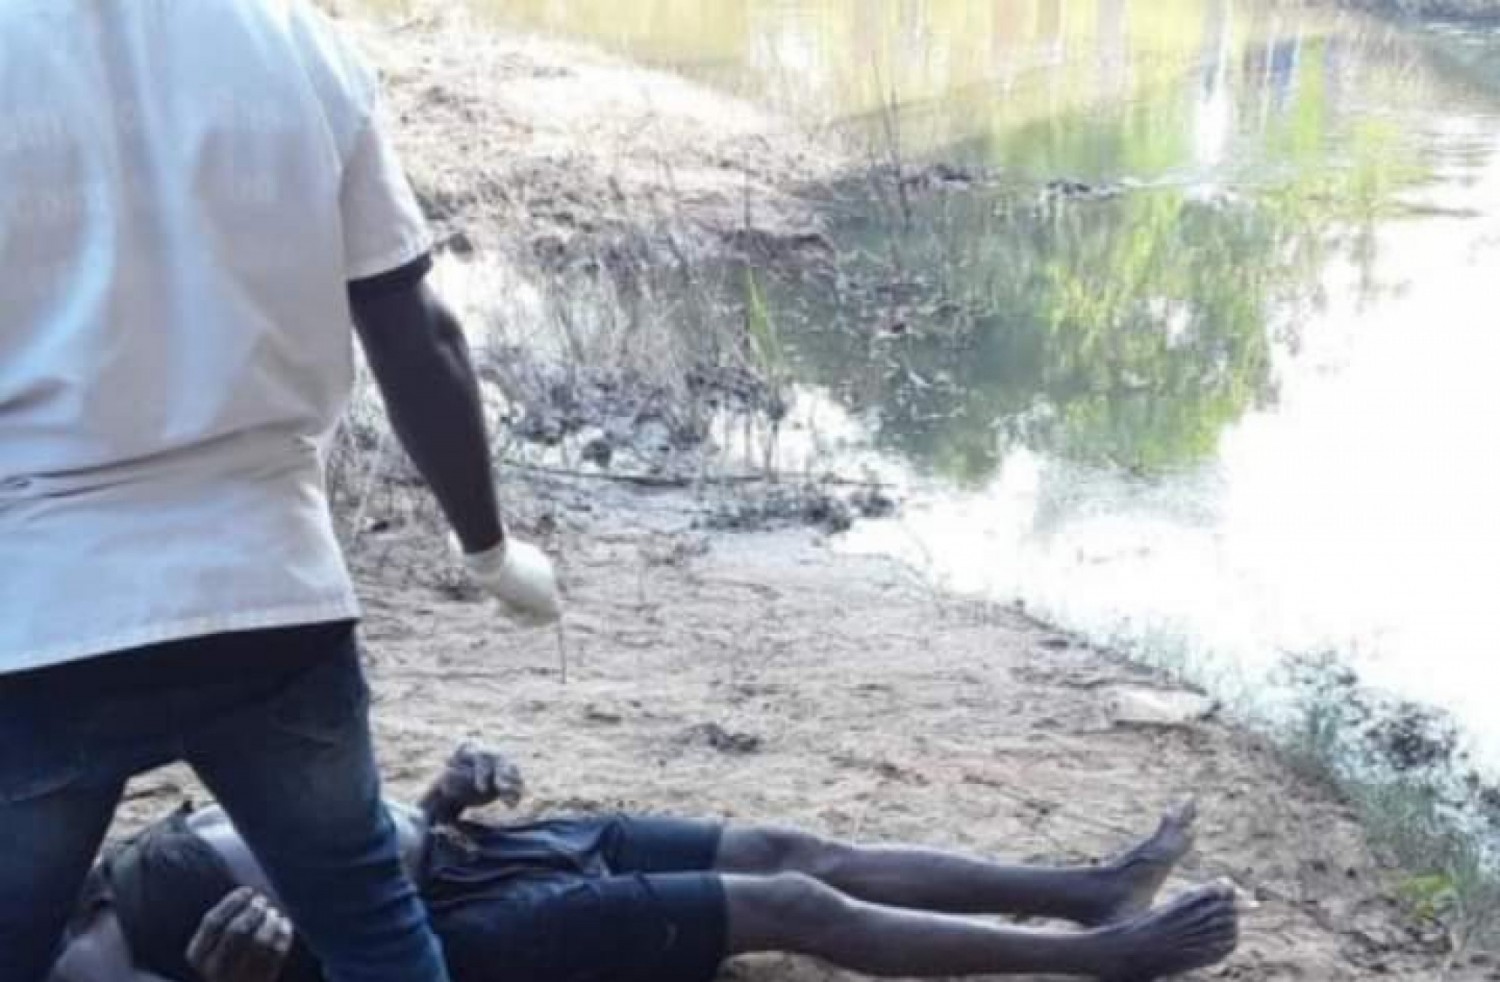 Côte d'Ivoire : Adzopé, suite à un conflit foncier qui les opposait, un père abat son fils à l'aide d'un fusil calibre 12